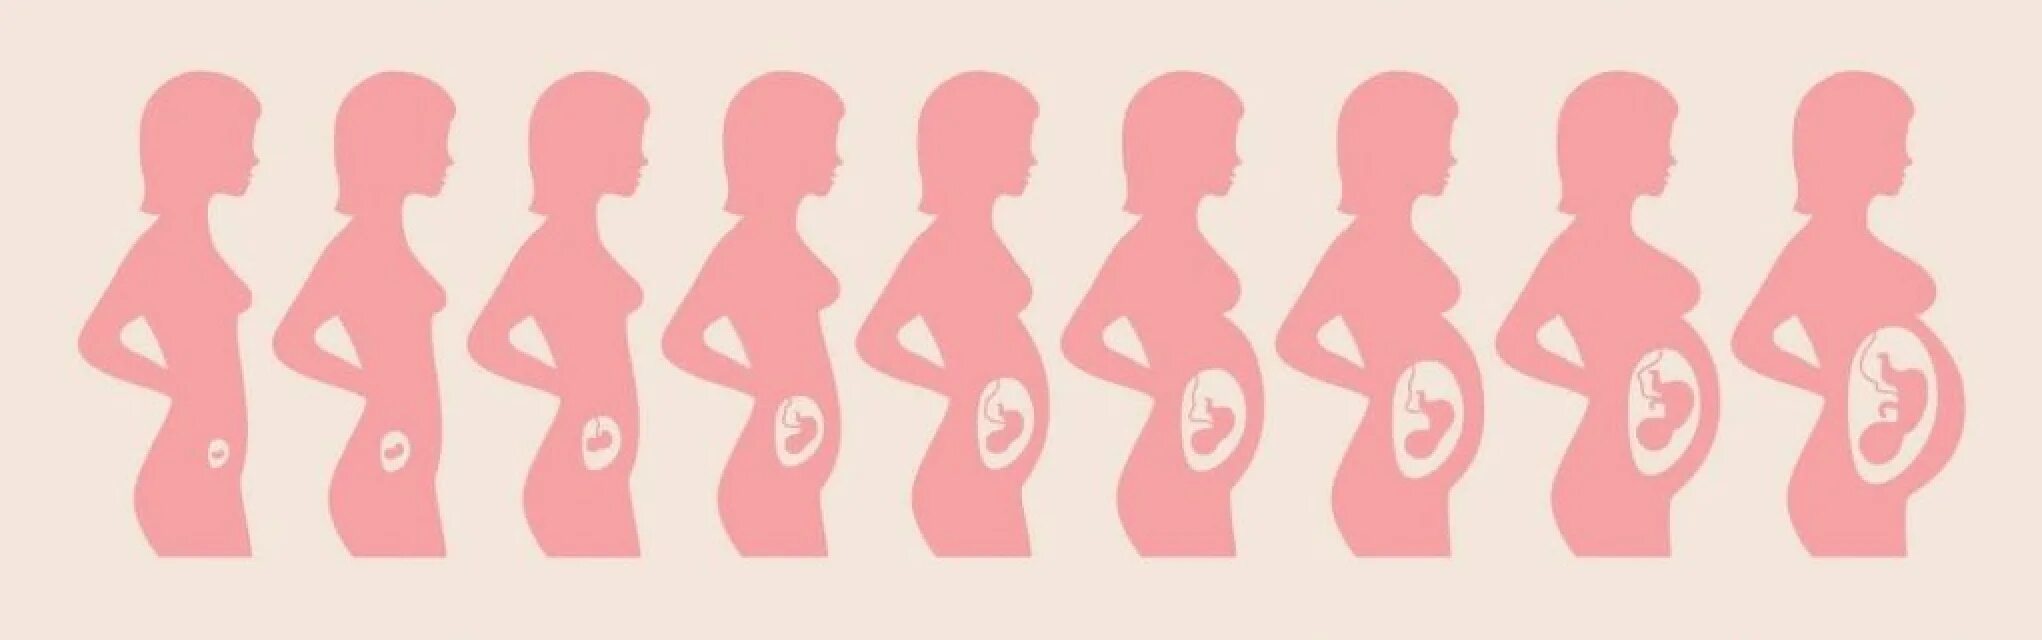 15 недель триместр. Размеры матки в 1 триместре беременности. Схема развития беременности по неделям. Стадии развития плода при беременности по неделям. Расположение ребенка в животе по неделям.